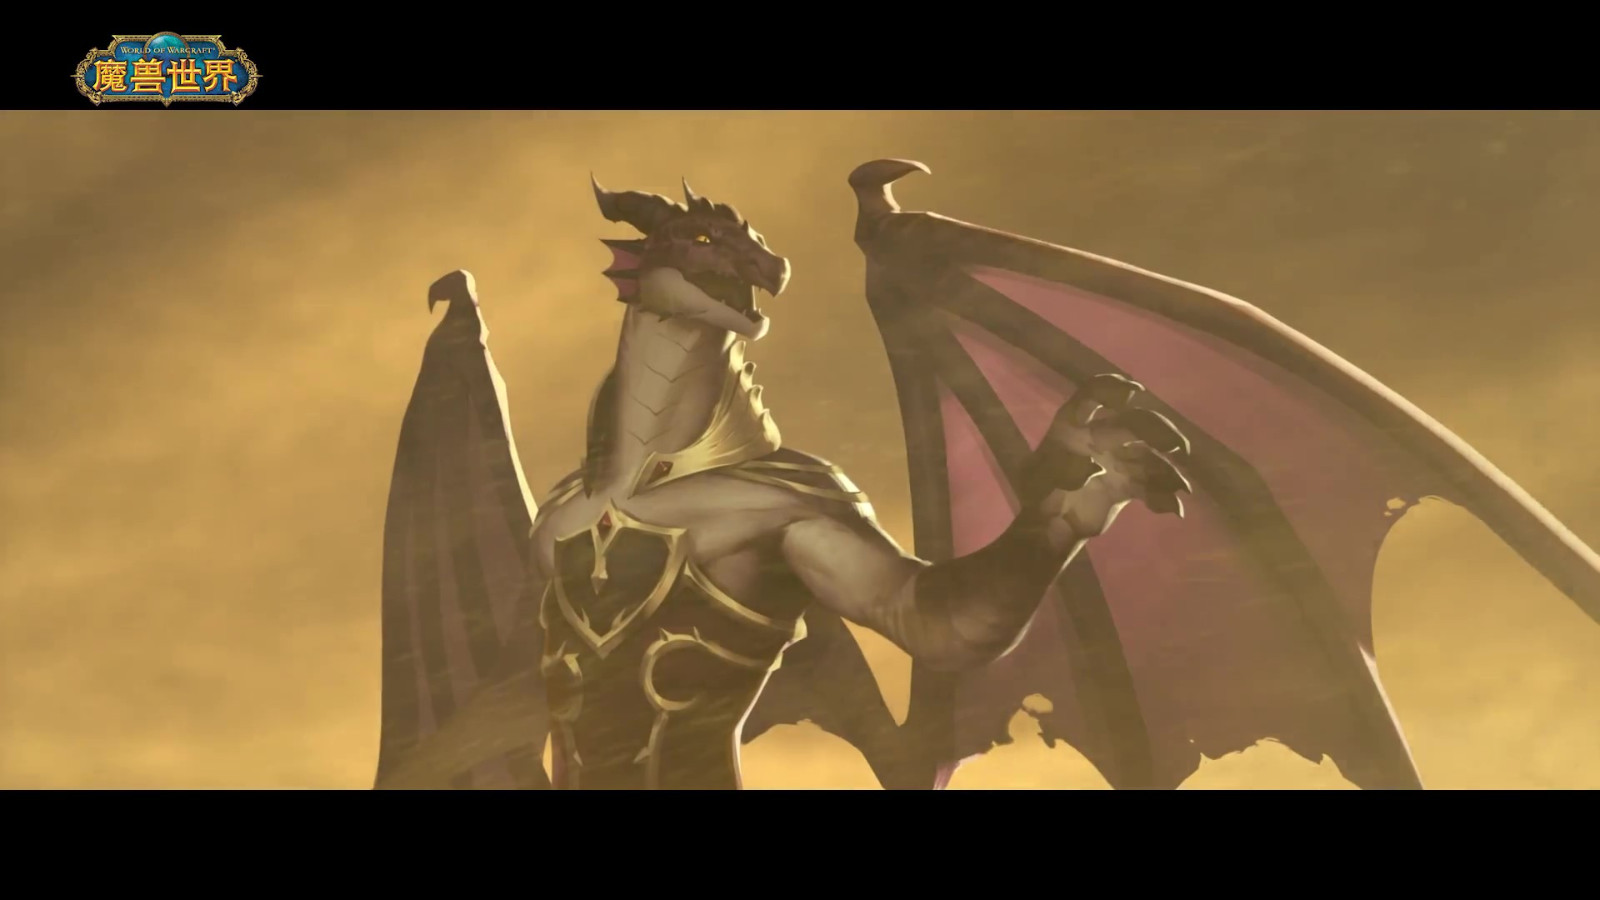 《魔兽世界》巨龙时代短片第3章 11月29日上线